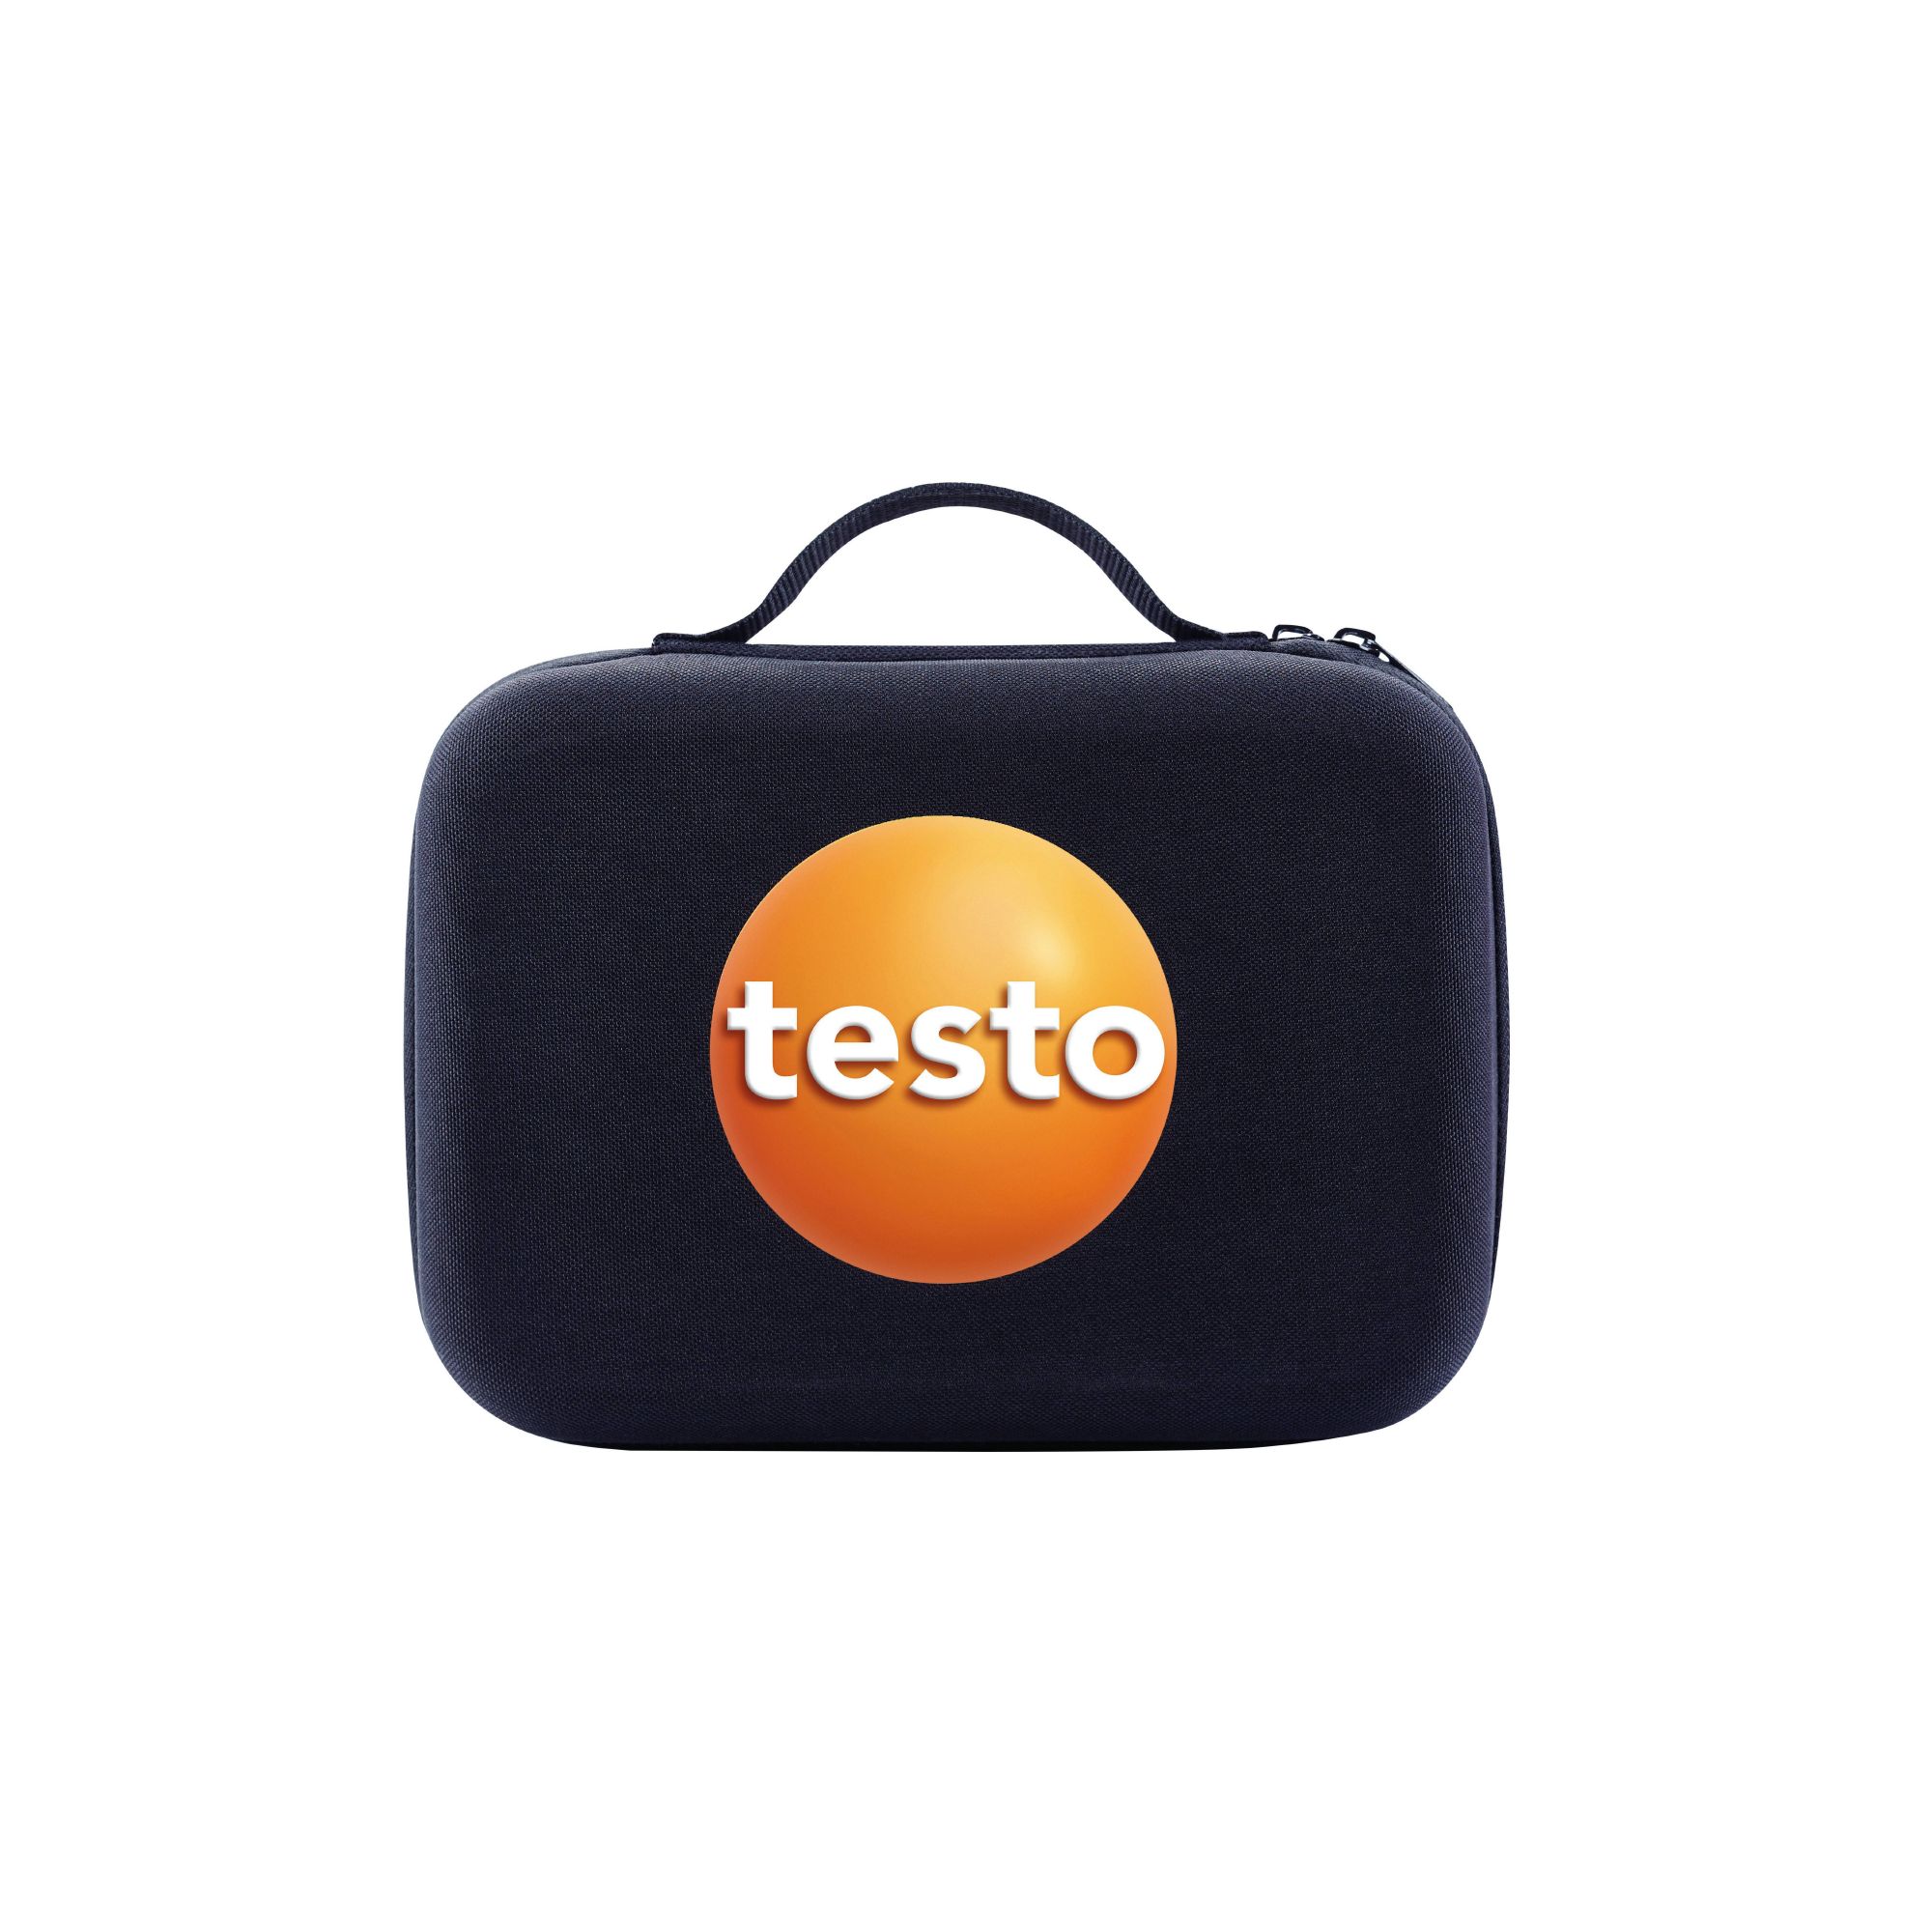 Testo Smart Case (Kälte) - Aufbewahrungstasche - 0516 0240